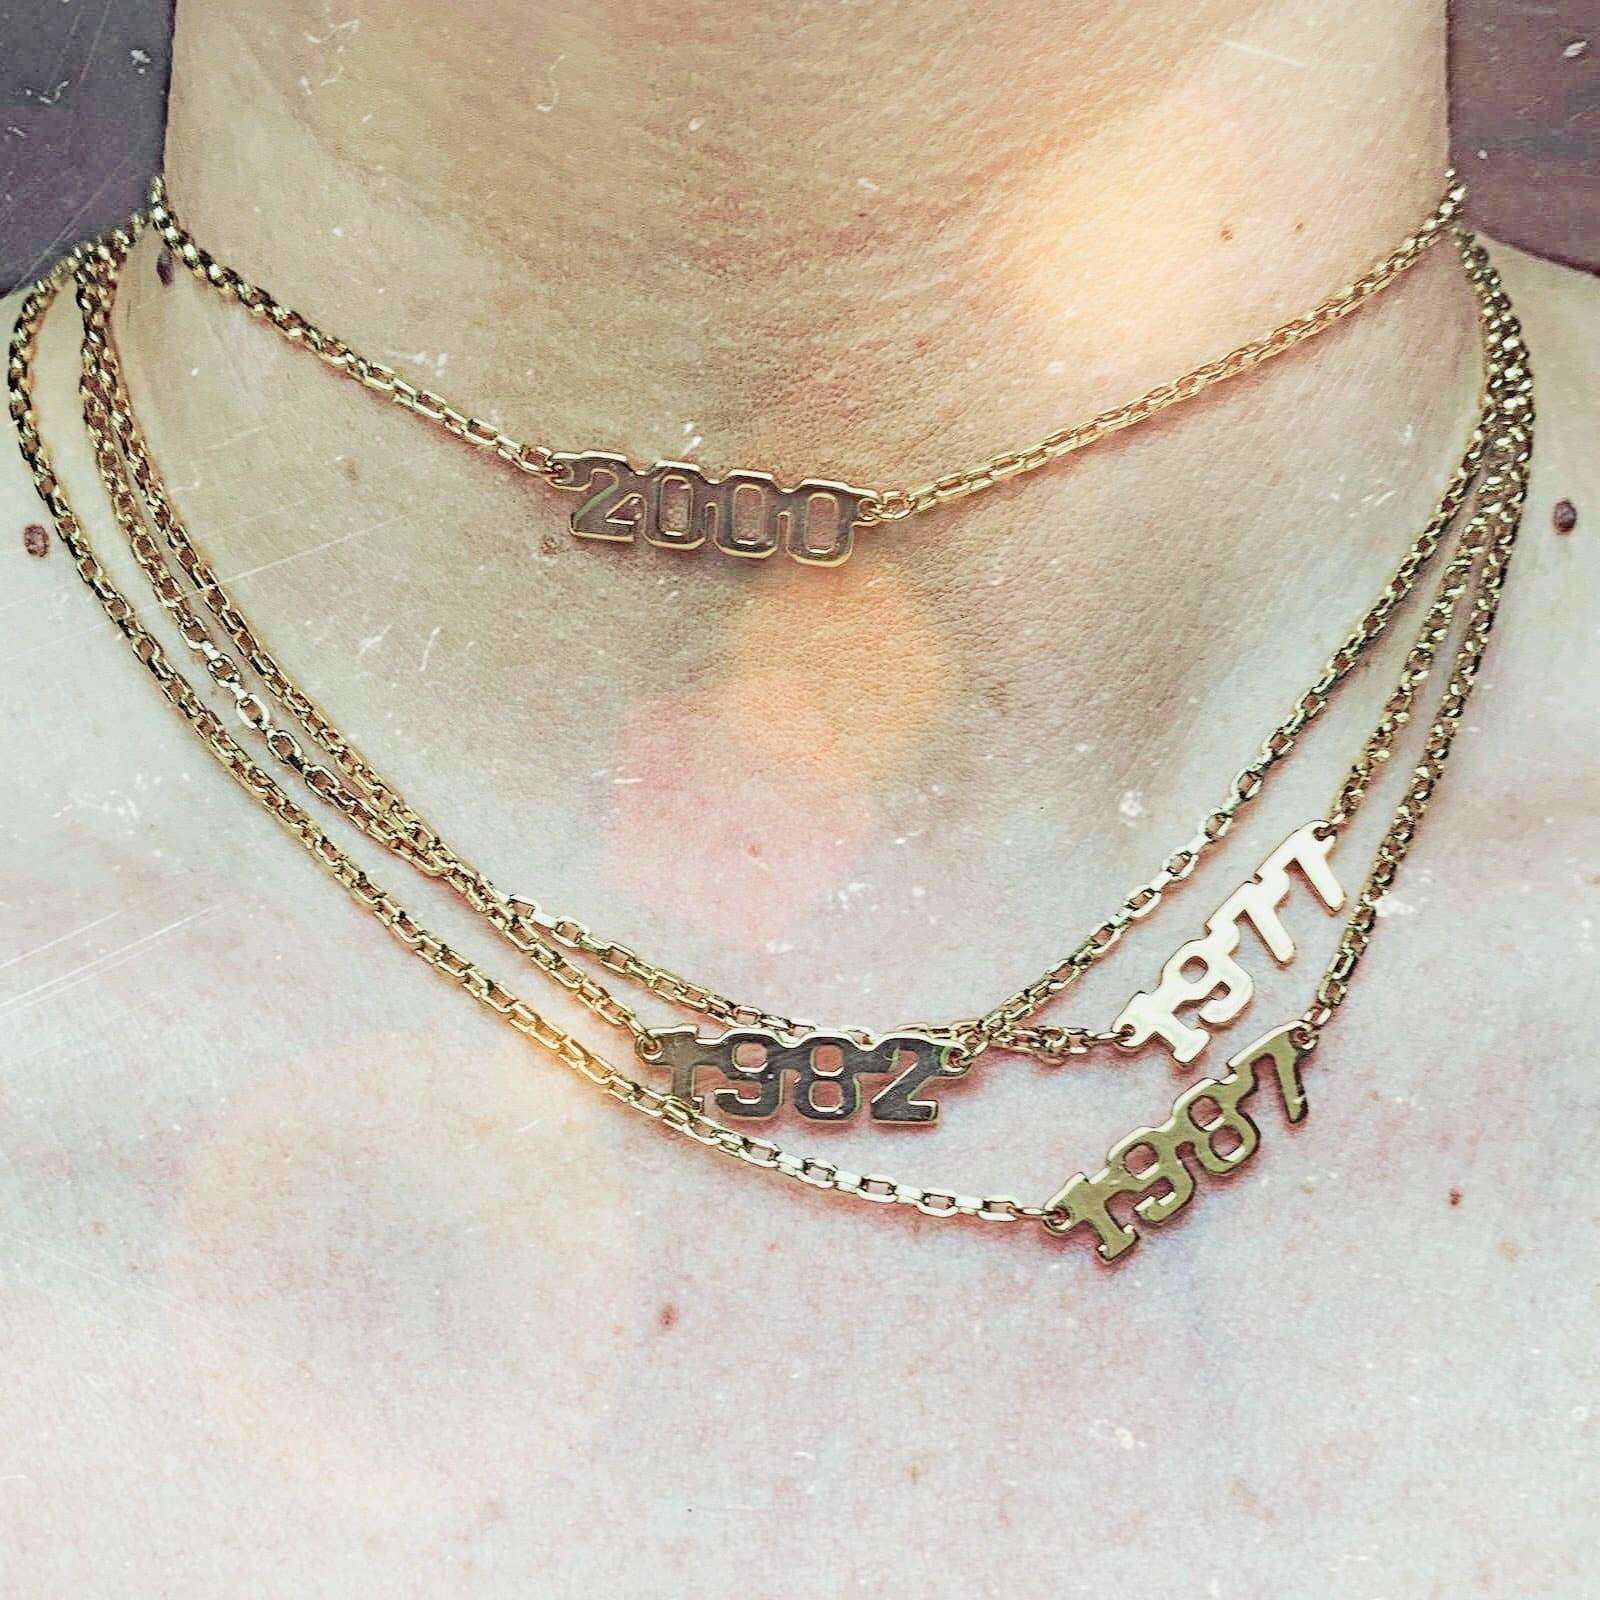  Year Necklace by Jonesy Wood Jonesy Wood Perfumarie